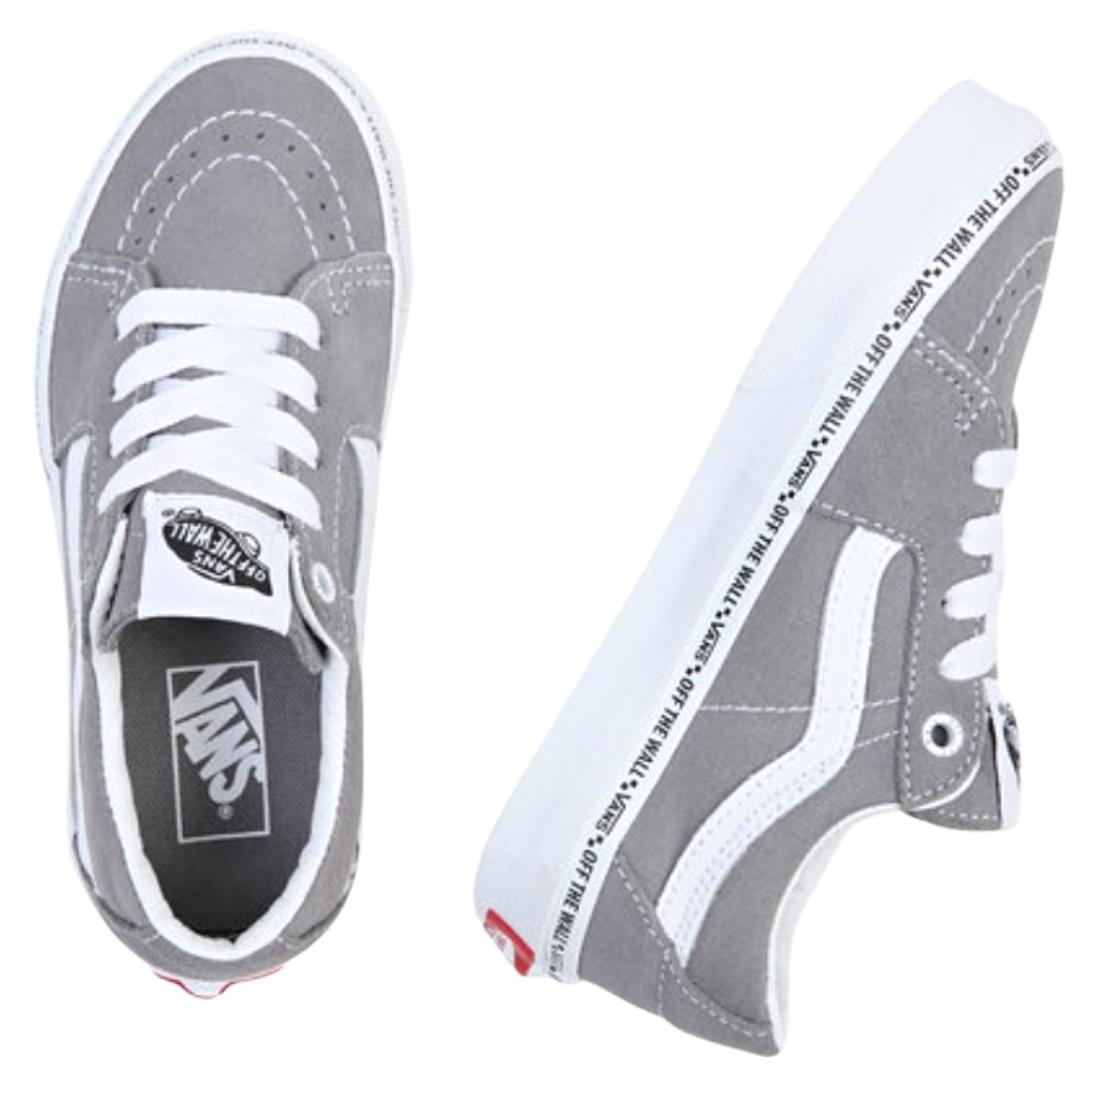 Vans Sk8-Low Kids Skate Shoes - Mini Vans Frost Grey - Boys Skate Shoes by Vans